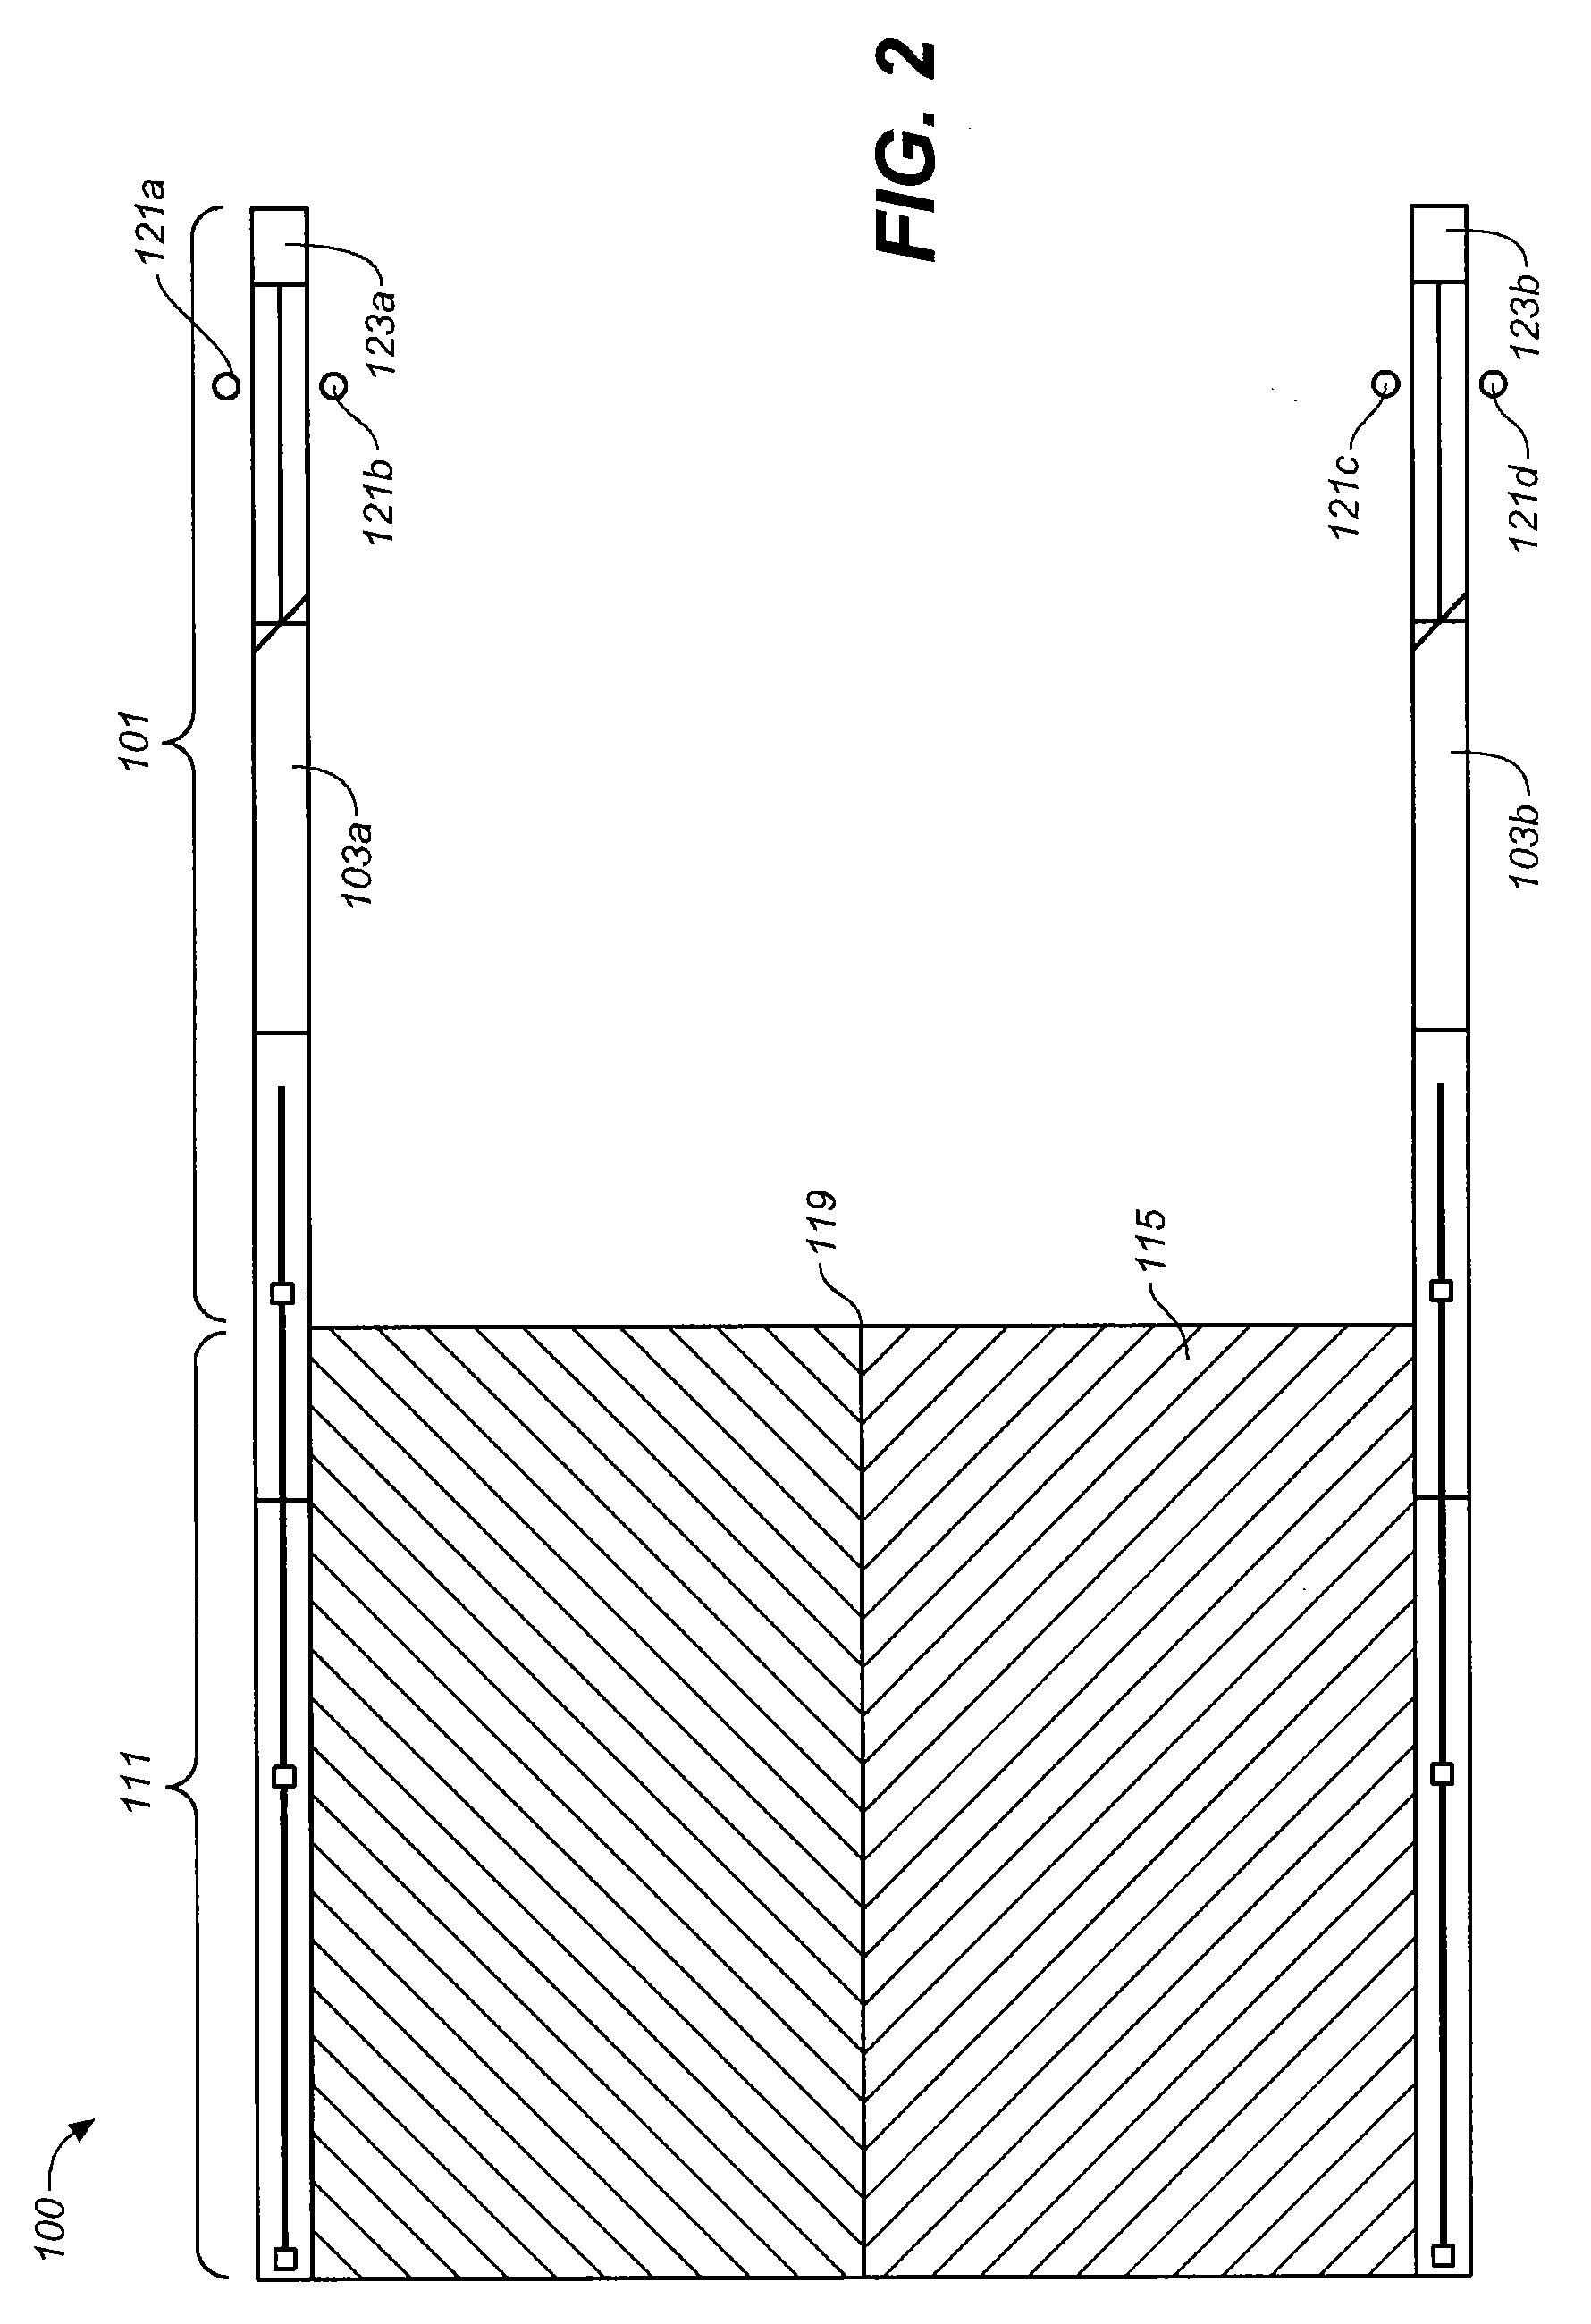 Folding construction platform